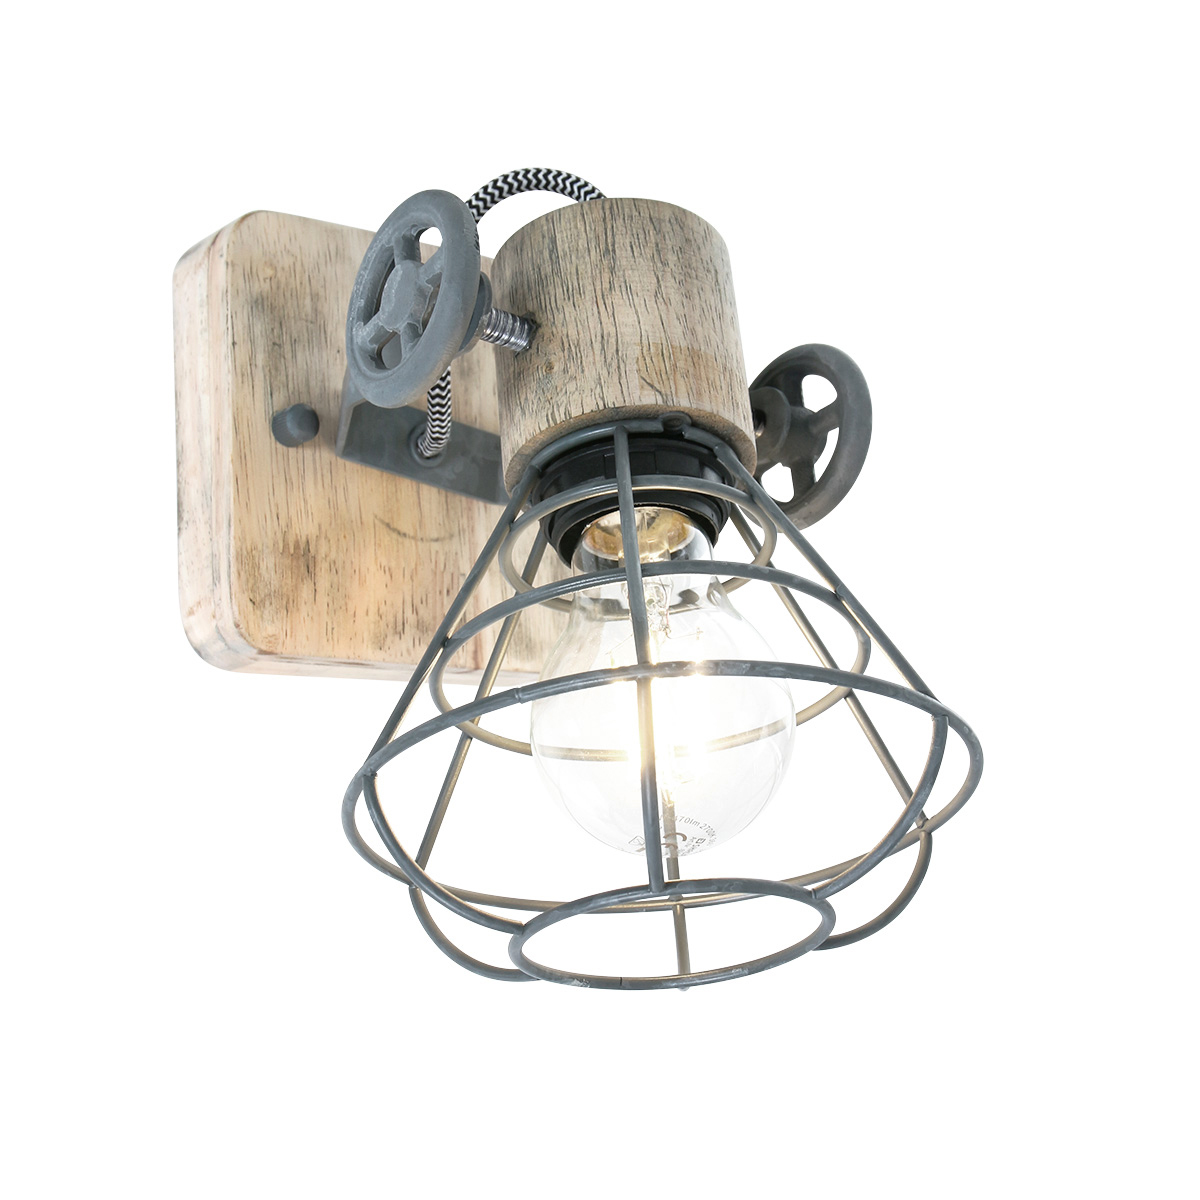 Anne GEURNSEY Wand- Deckenstrahler in freshem Industriedesign 1-flammig mit Holz in Grau